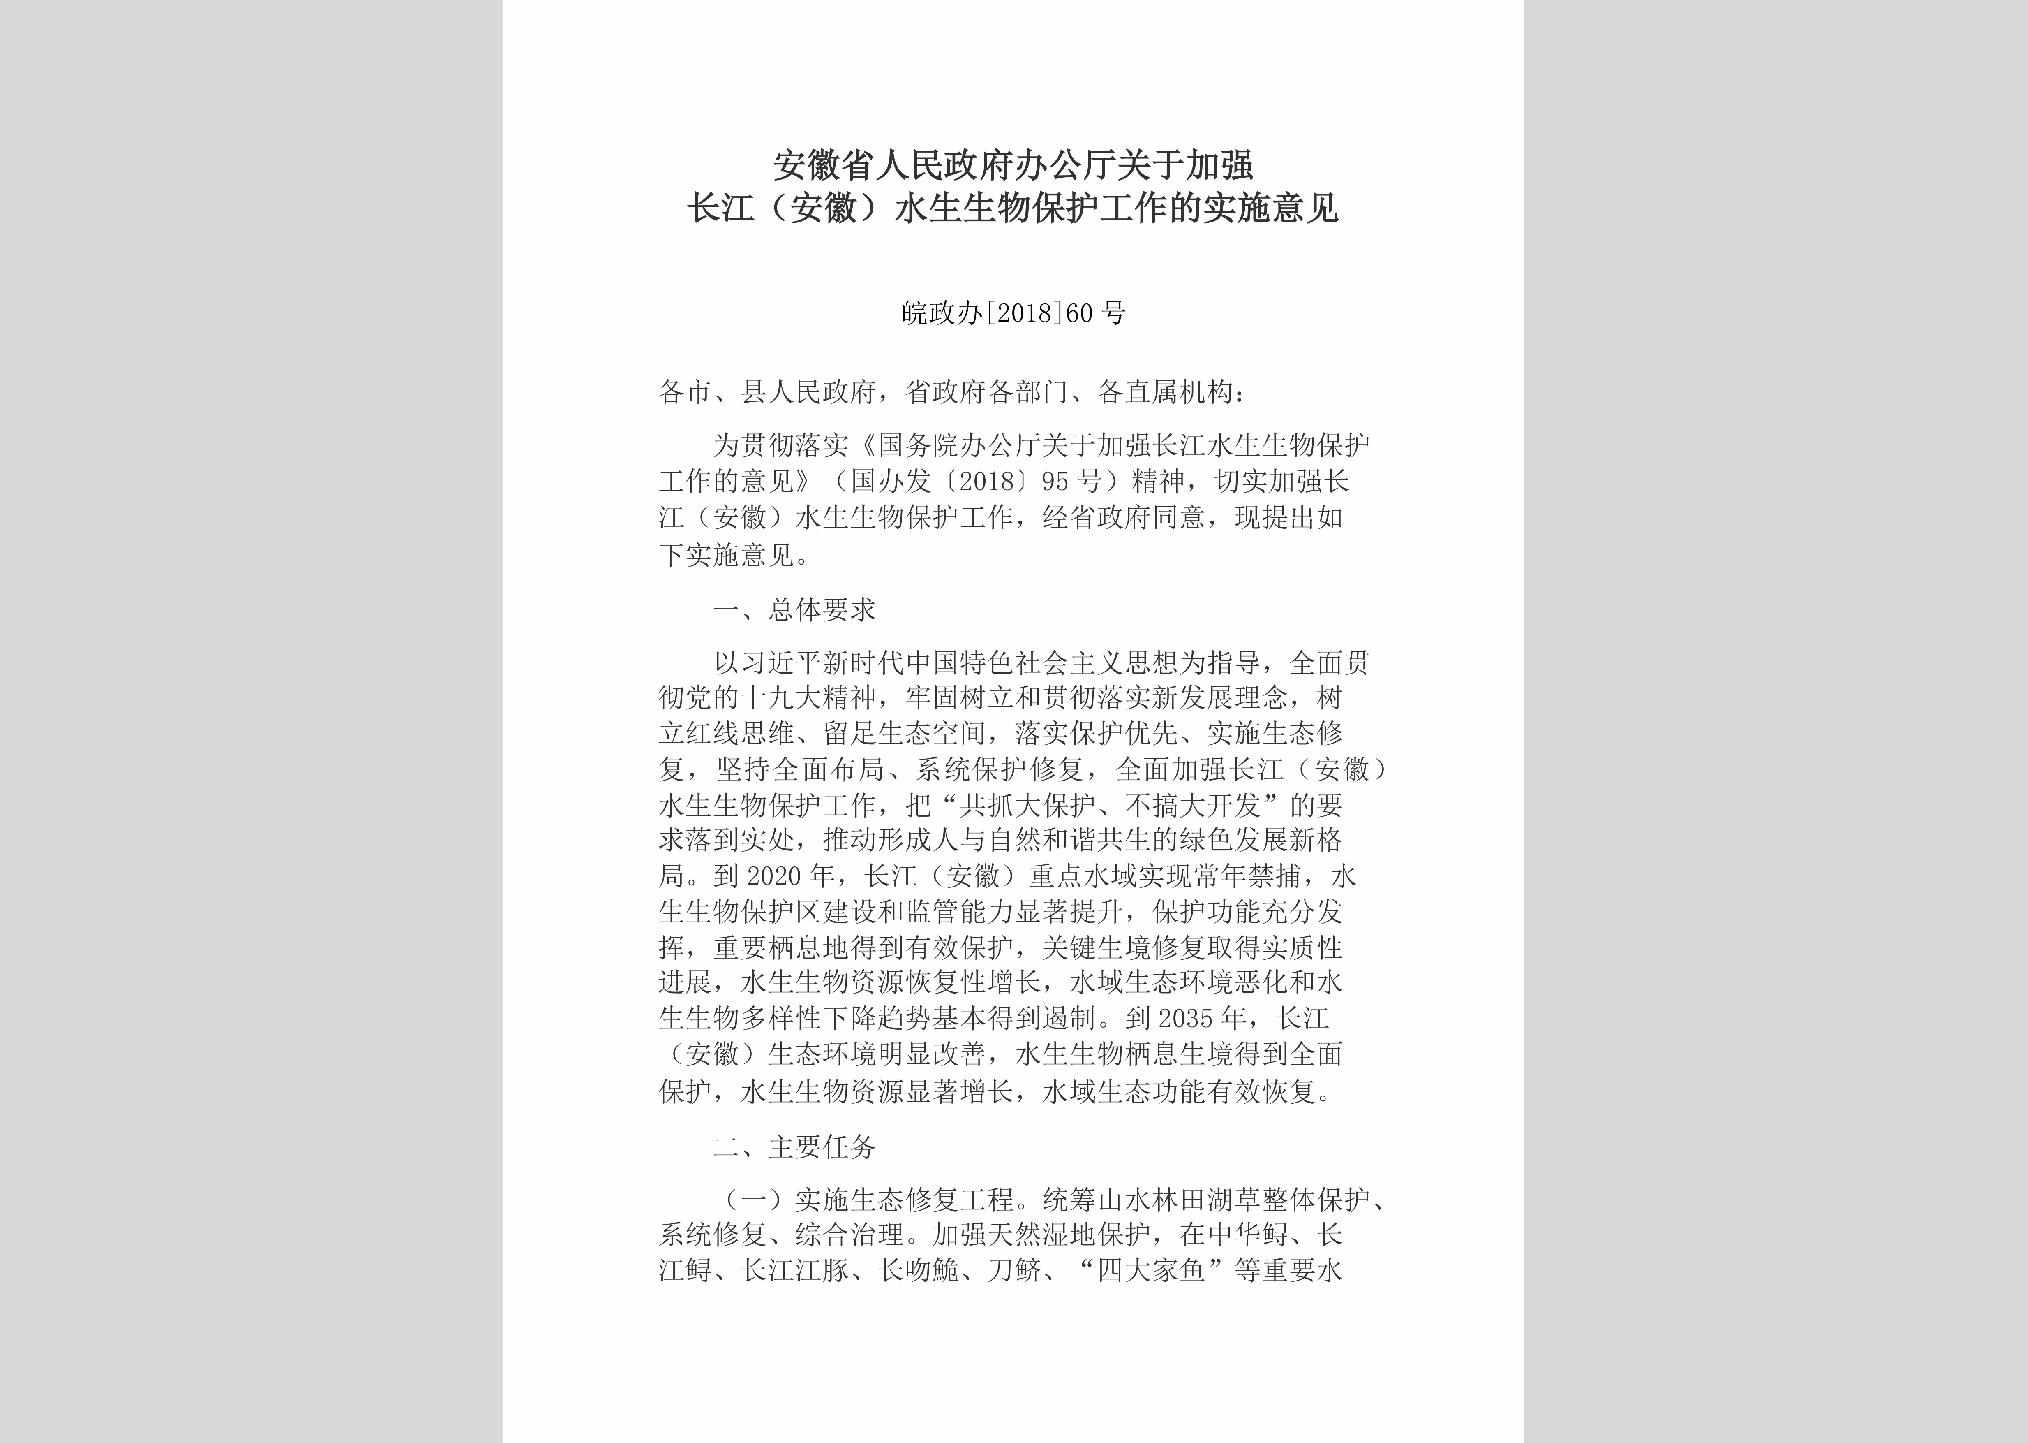 皖政办[2018]60号：安徽省人民政府办公厅关于加强长江（安徽）水生生物保护工作的实施意见